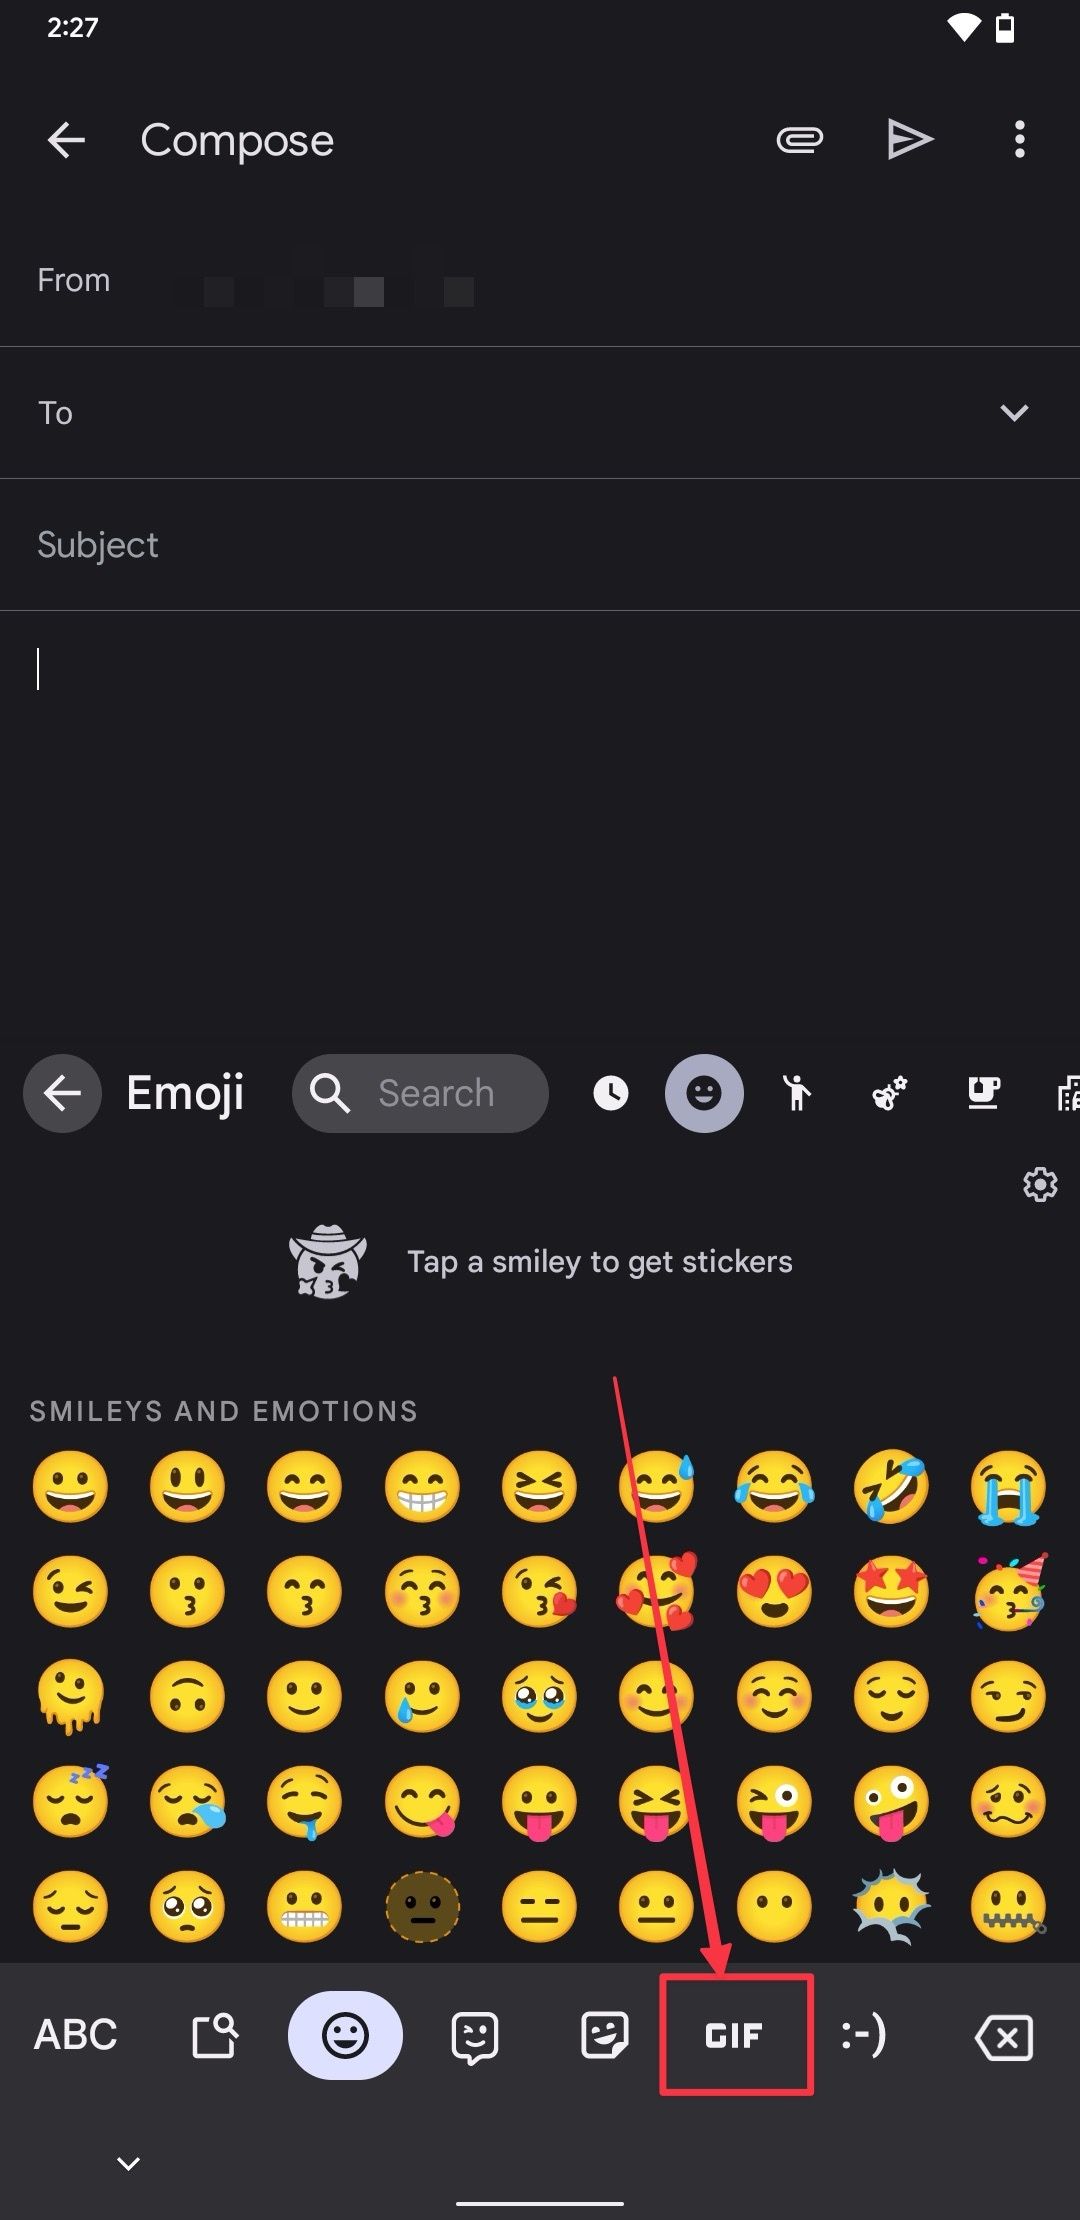 Captura de tela do teclado emoji do Gboard mostrando a opção GIF